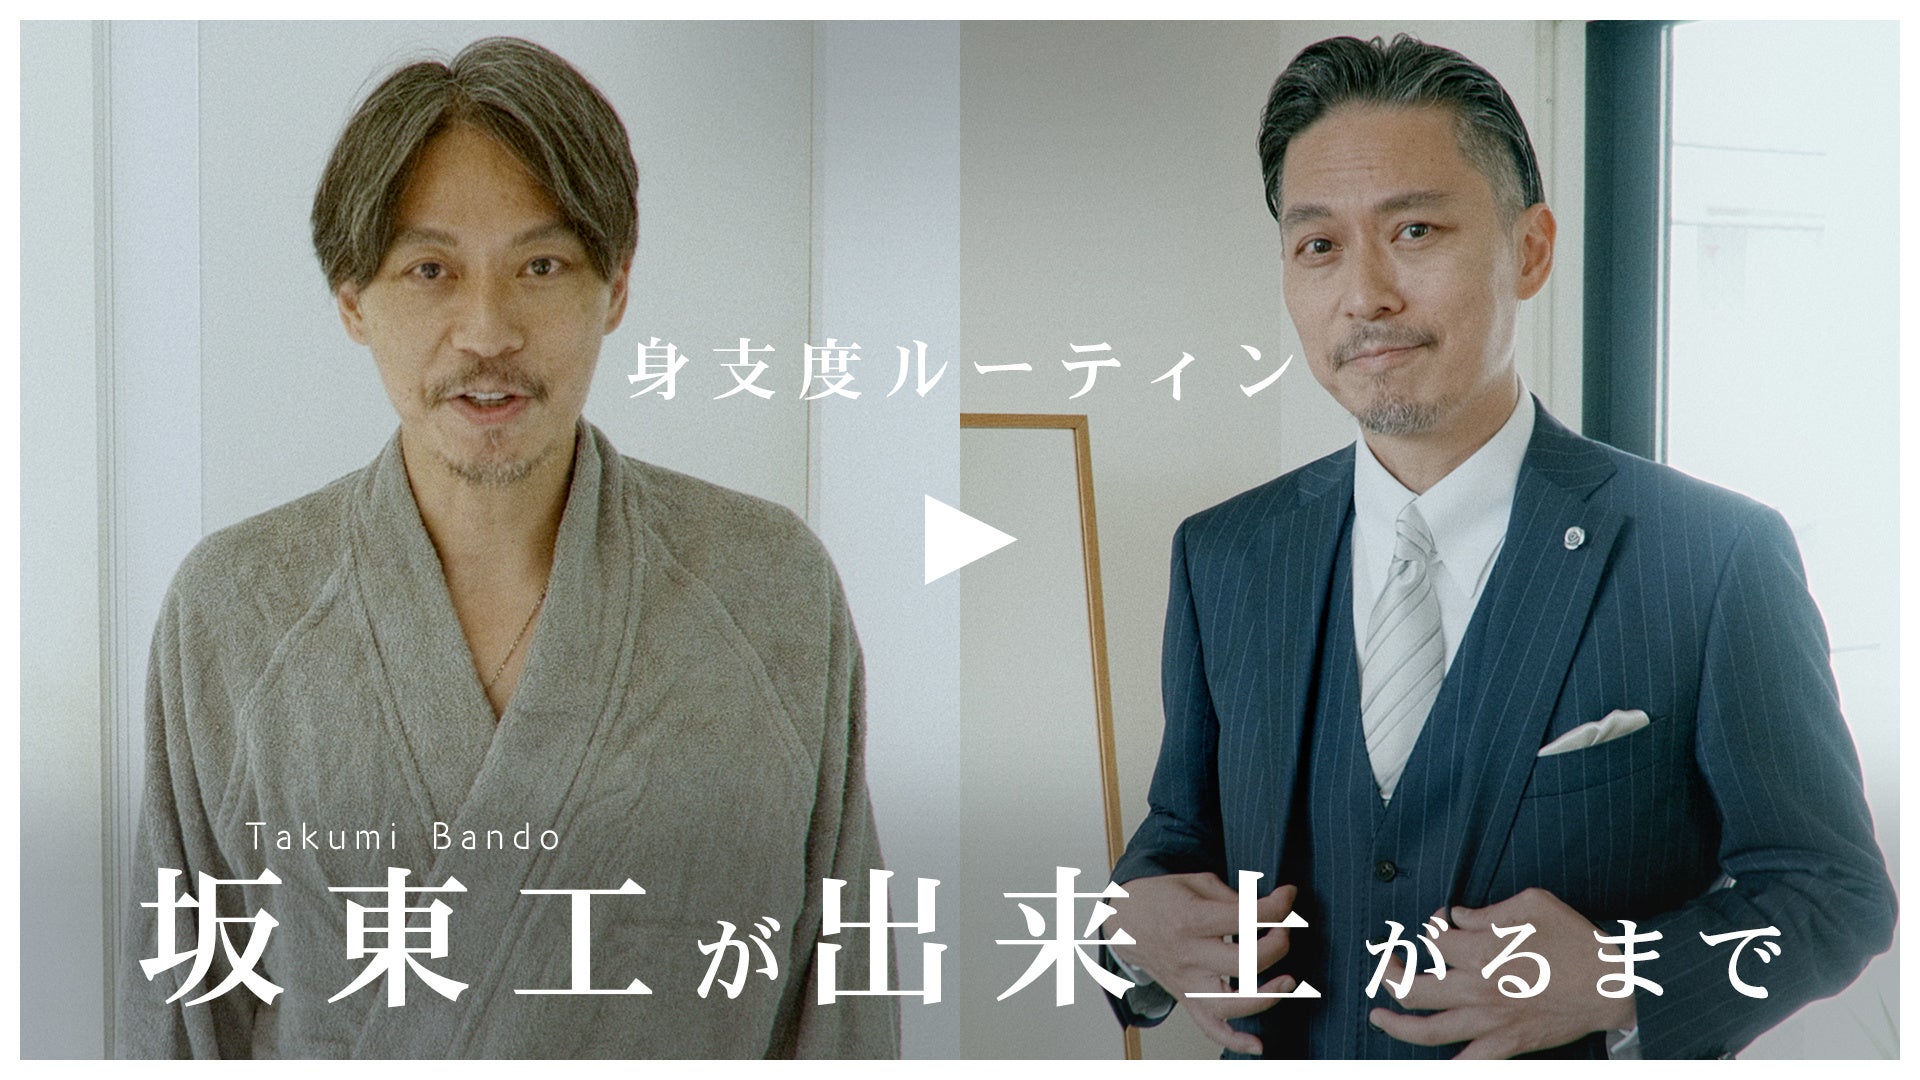 「坂東工は香りとともにオンになる。」こだわりの身支度ルーティーン動画を『TIMELINE クラウドファンディング』で公開